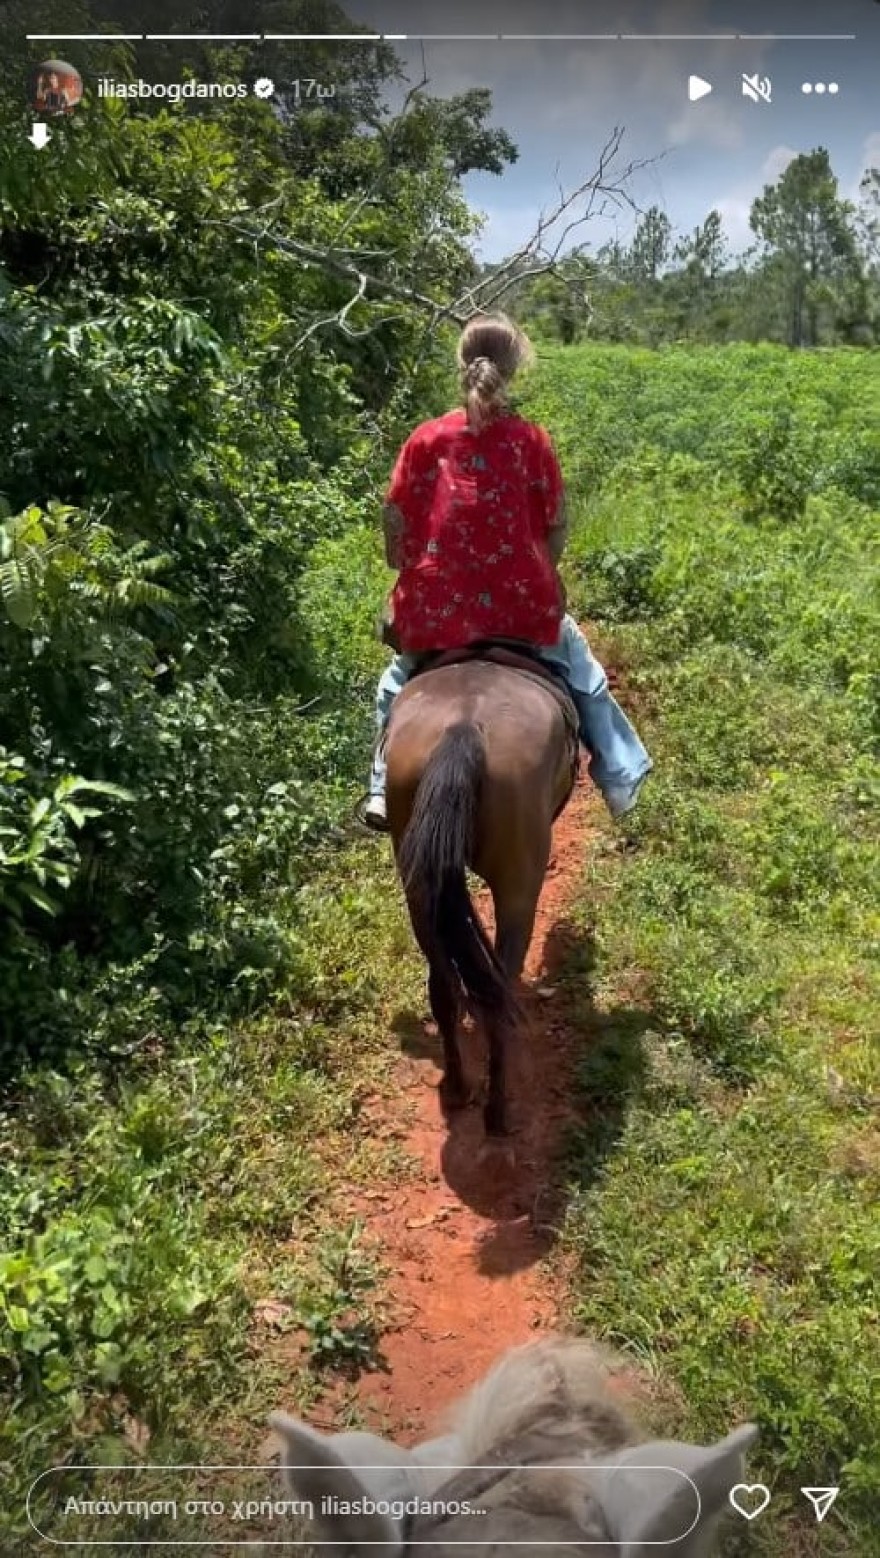 Για ιππασία και κοκτέιλς - Μαγευτικές φωτογραφίες από το ταξίδι Μπόγδανου - Εξαρχοπούλου στην Κούβα